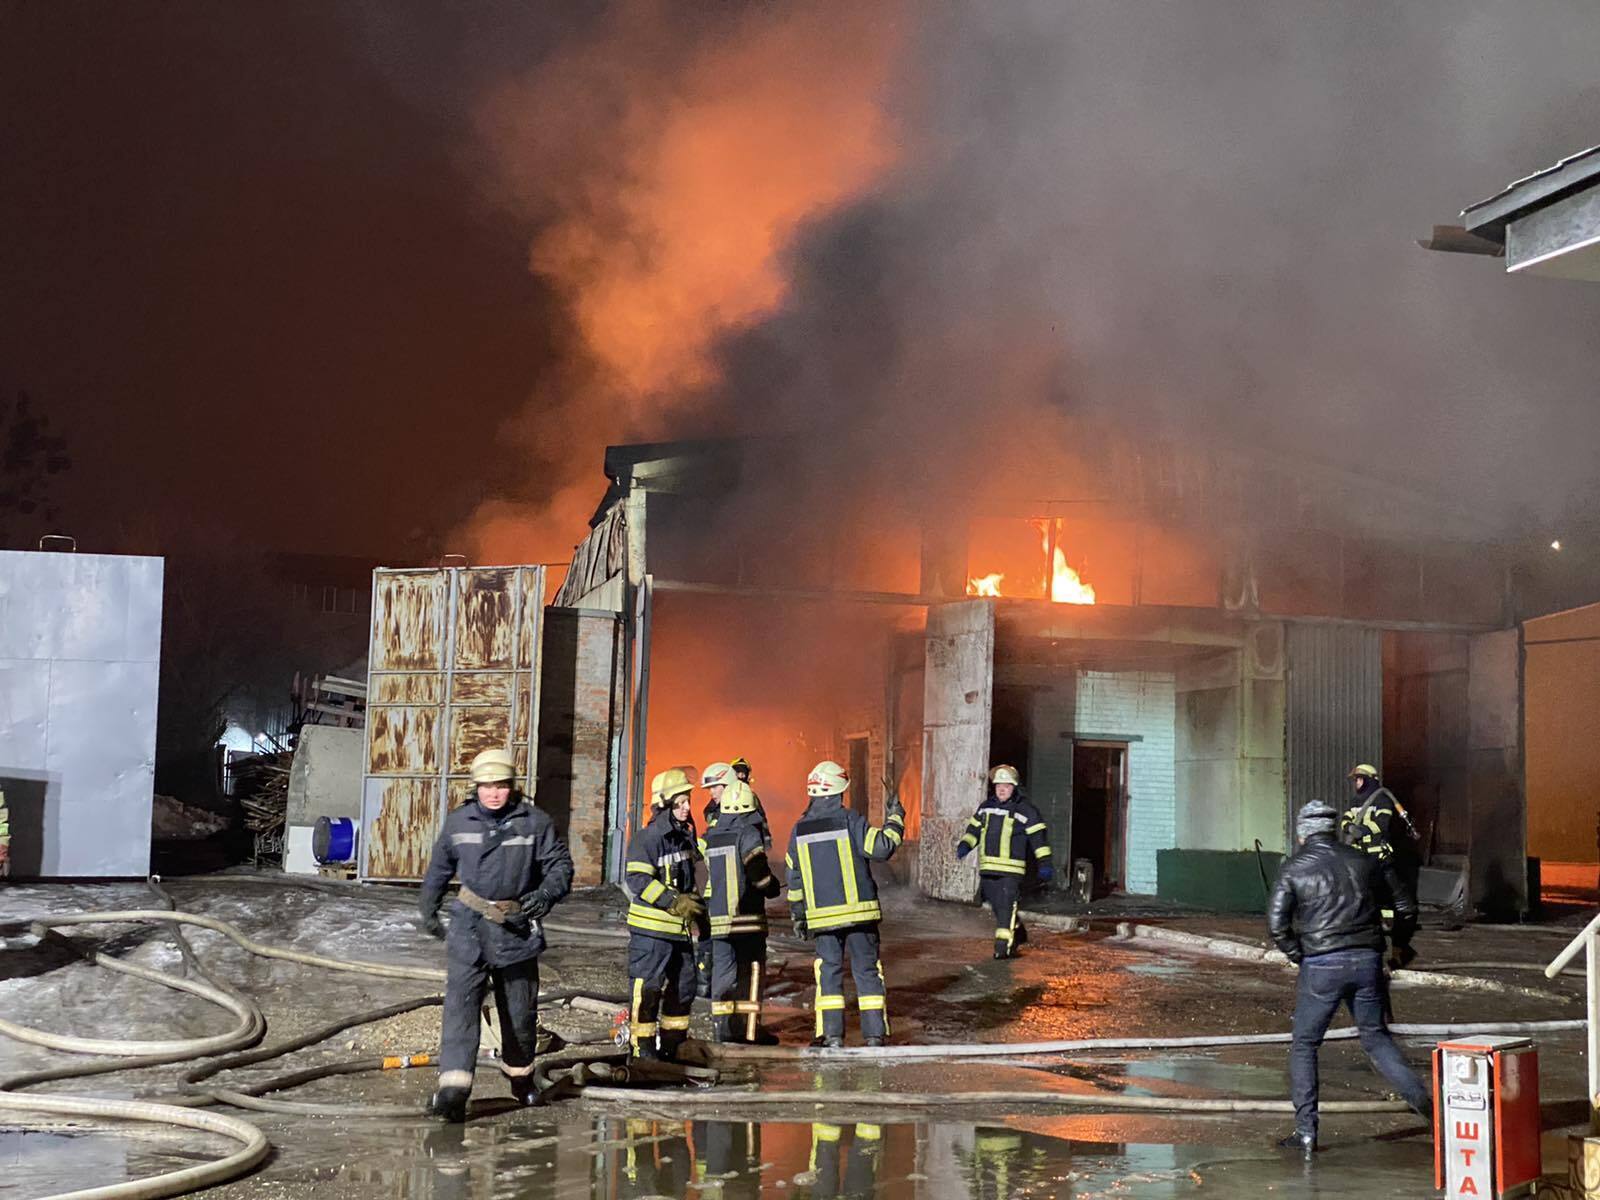 Харків: локалізовано пожежу складської будівлі